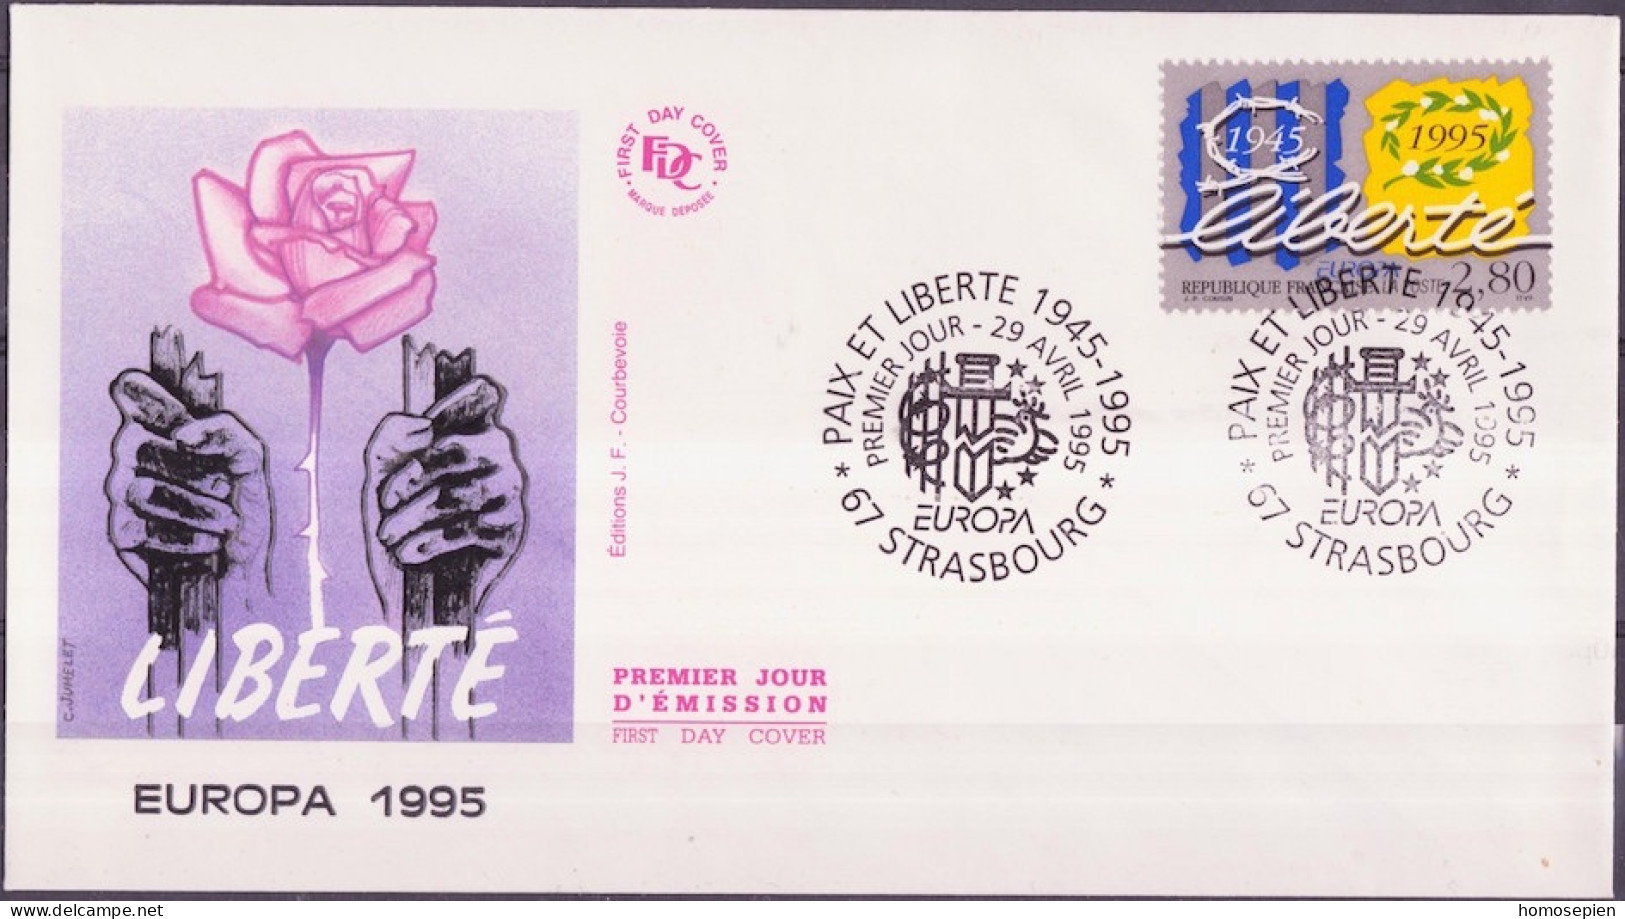 Europa CEPT 1995 France - Frankreich FDC1 Y&T N°2941 - Michel N°3084 - 2,80f EUROPA - 1995